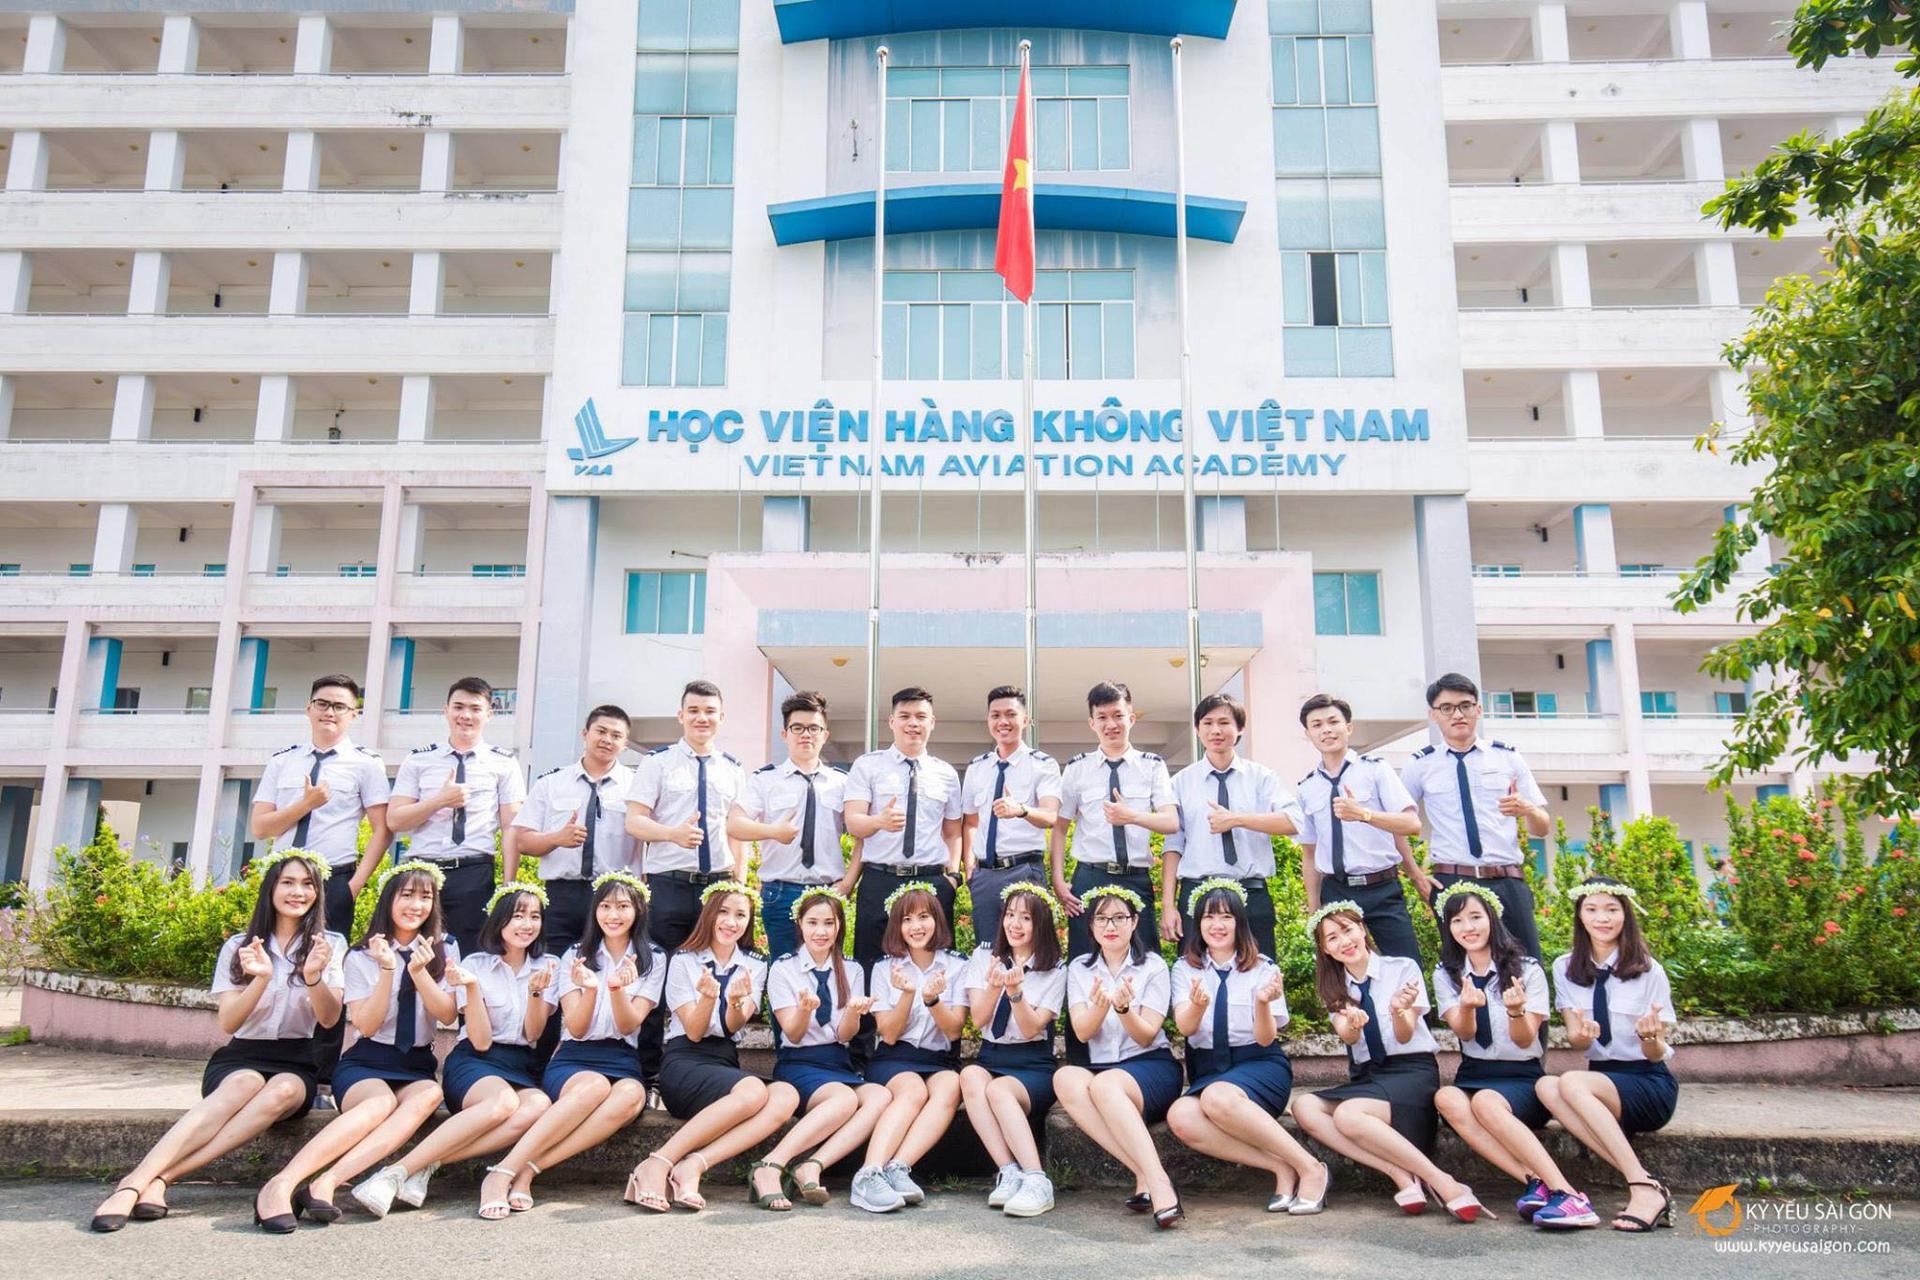 Học viện Hàng Không Việt Nam chính là nguồn nhân lực cung cấp cho ngành Hàng không Việt Nam